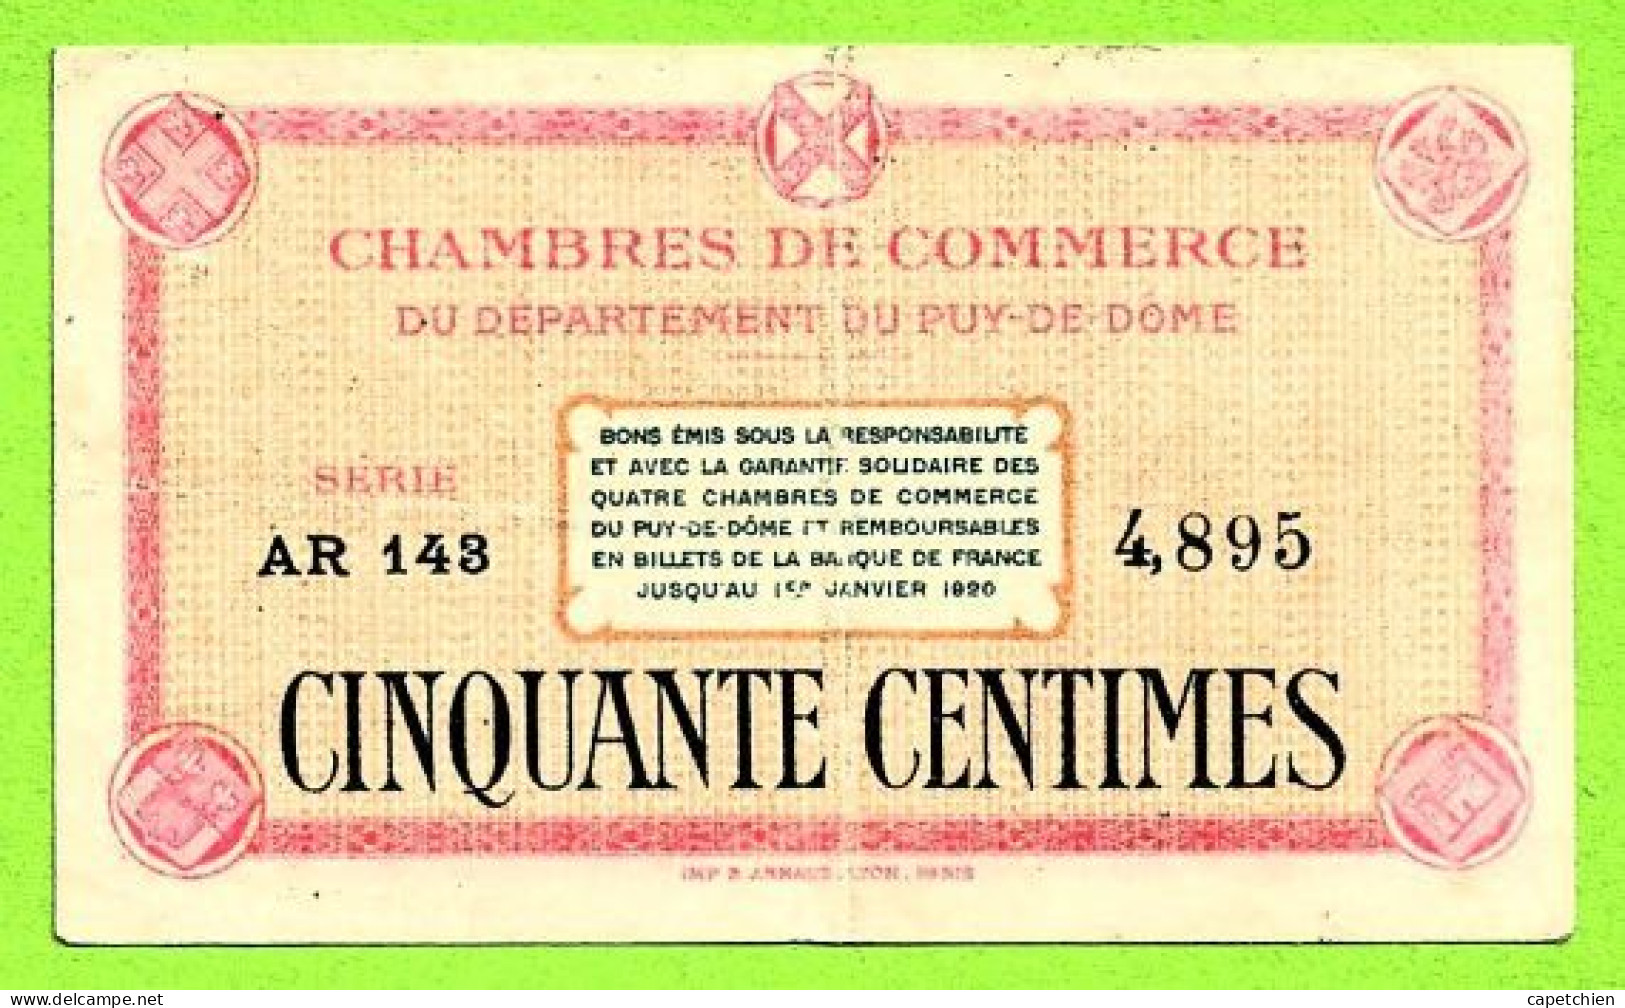 FRANCE / CHAMBRES De COMMERCE Du DEPARTEMENT Du PUY De DÔME / 50 CENT. / N° 4,895 / SERIE AR 143 - Chambre De Commerce